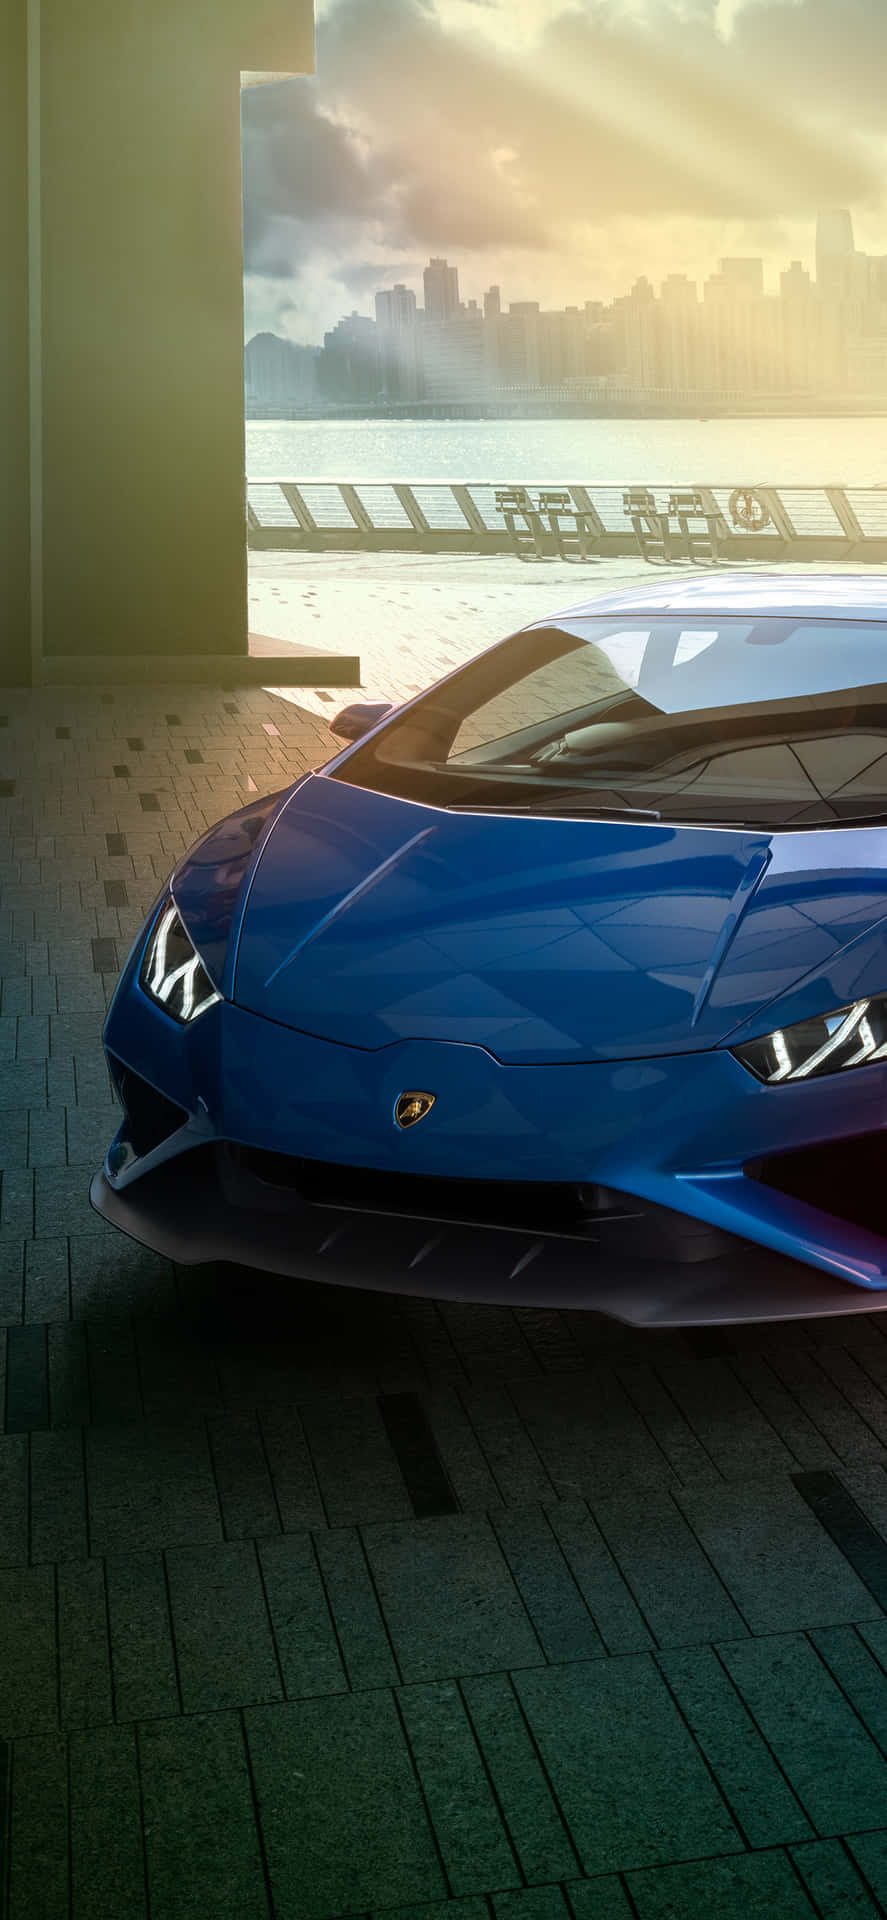 Echaun Vistazo A La Belleza Con El Lamborghini Azul En El Iphone. Fondo de pantalla